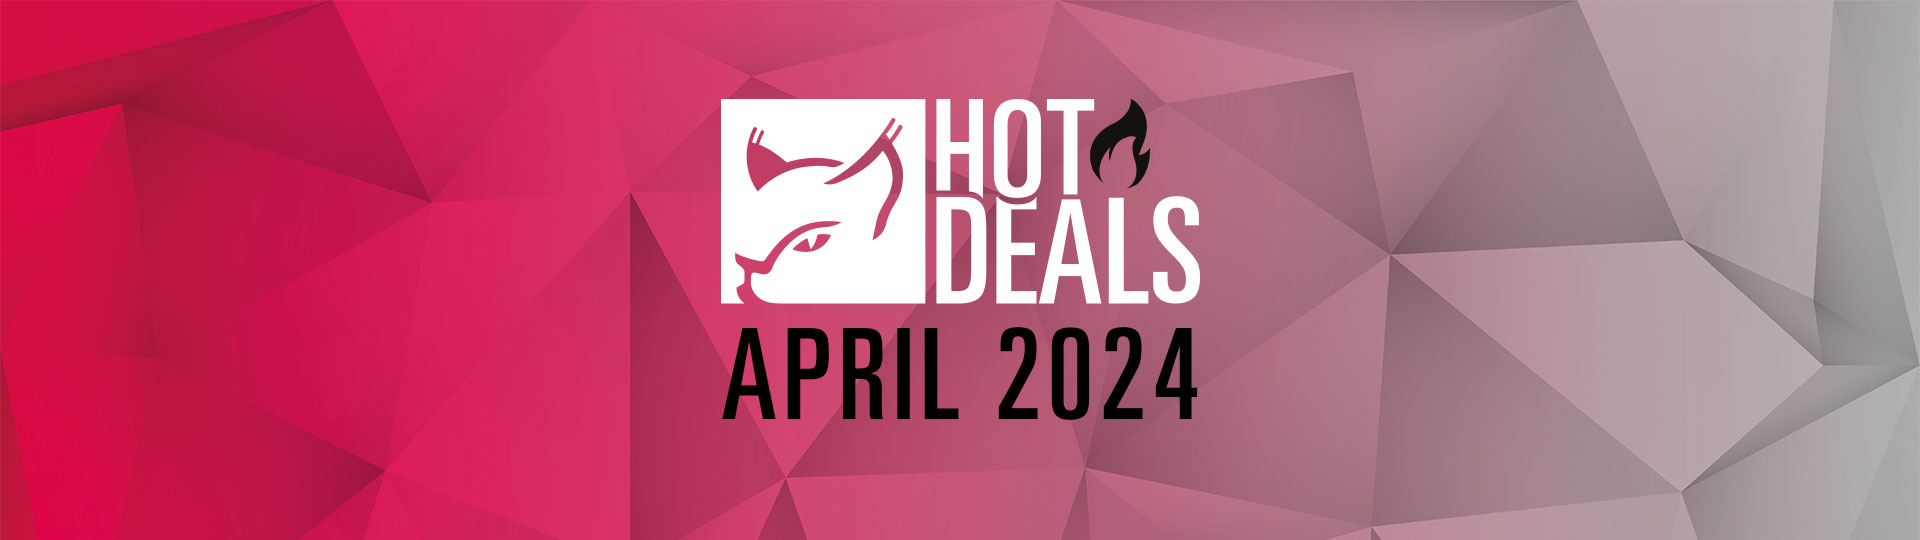 Hörluchs® Hot Deals April